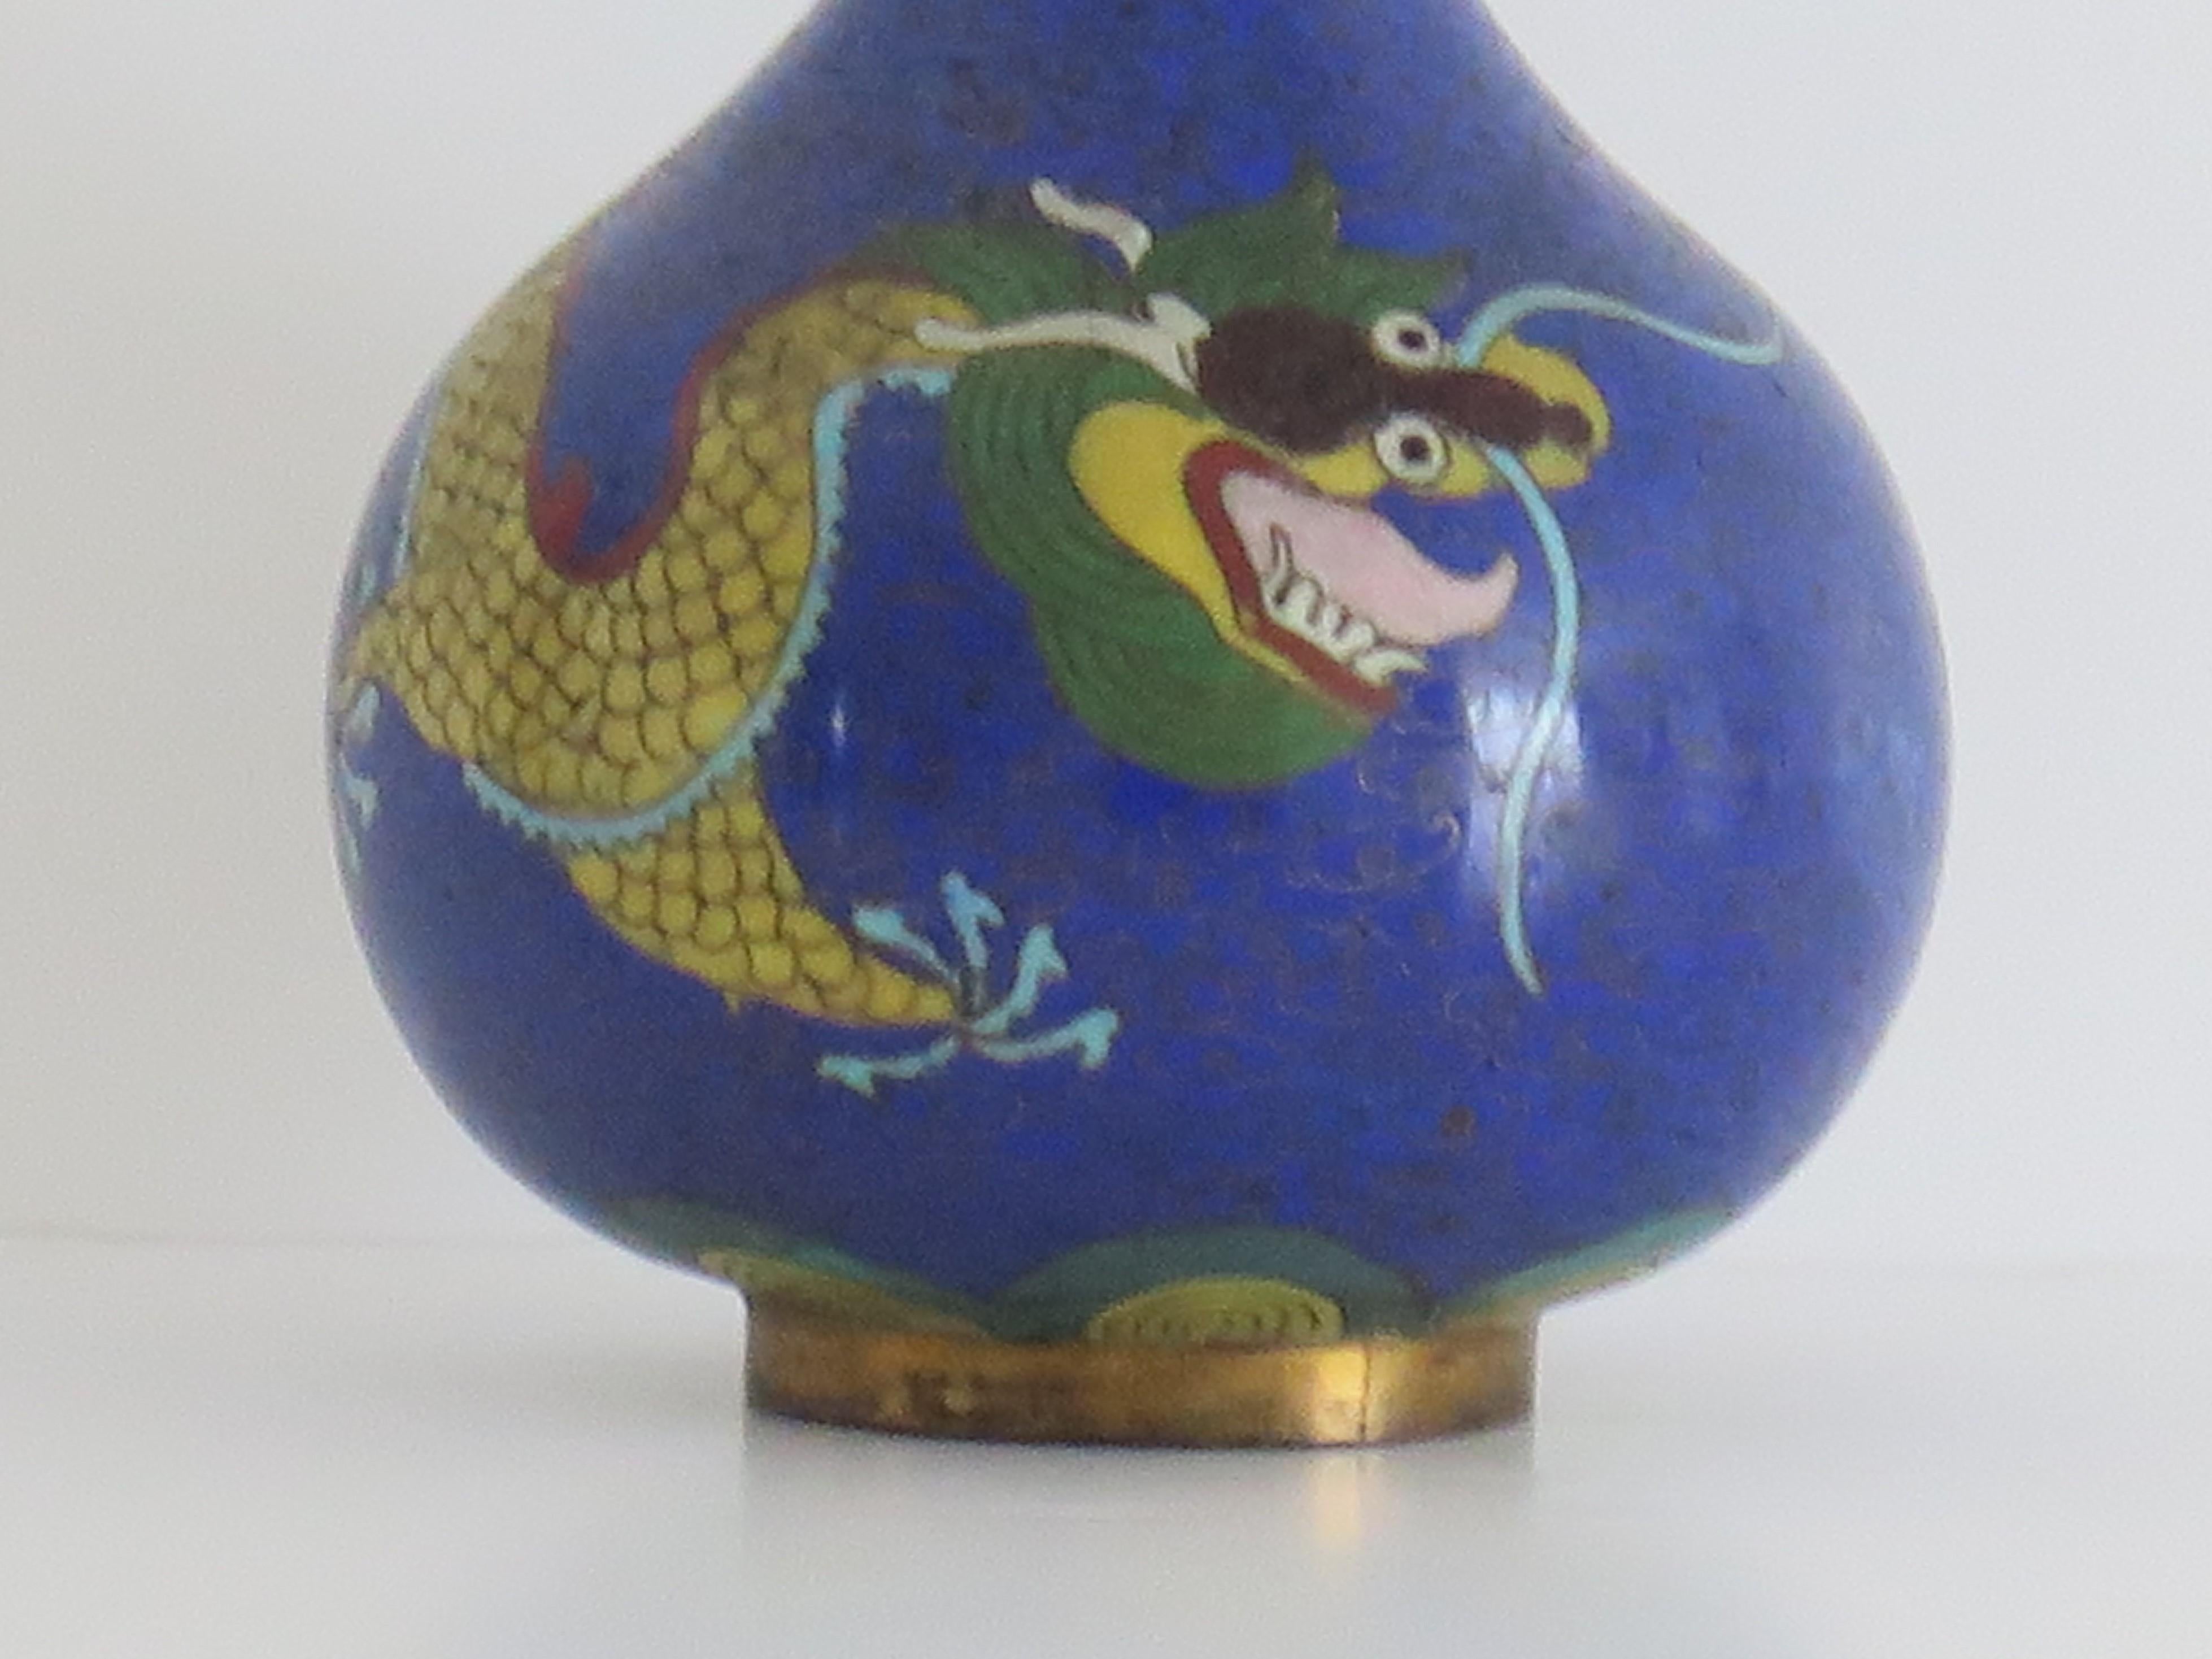 Dies ist eine sehr dekorative kleine Cloisonné-Vase, die in China hergestellt wurde und aus der zweiten Hälfte des 19. 

Die Vase hat eine gute kugelförmige Balusterform. Sie wurde aus einer Bronzelegierung mit reichhaltigen Emaillen in vielen